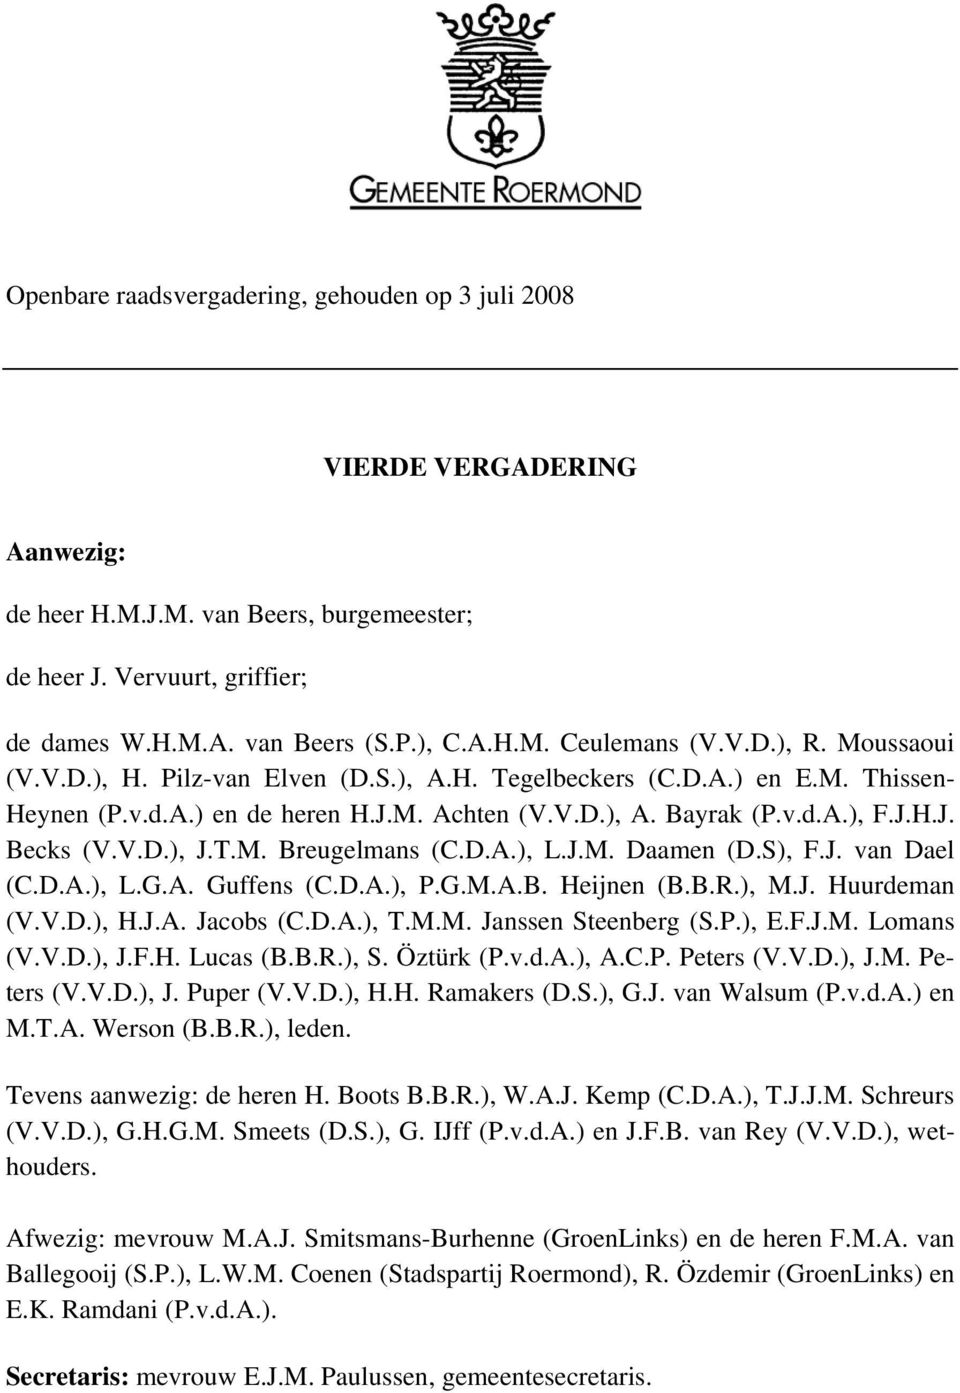 T.M. Breugelmans (C.D.A.), L.J.M. Daamen (D.S), F.J. van Dael (C.D.A.), L.G.A. Guffens (C.D.A.), P.G.M.A.B. Heijnen (B.B.R.), M.J. Huurdeman (V.V.D.), H.J.A. Jacobs (C.D.A.), T.M.M. Janssen Steenberg (S.